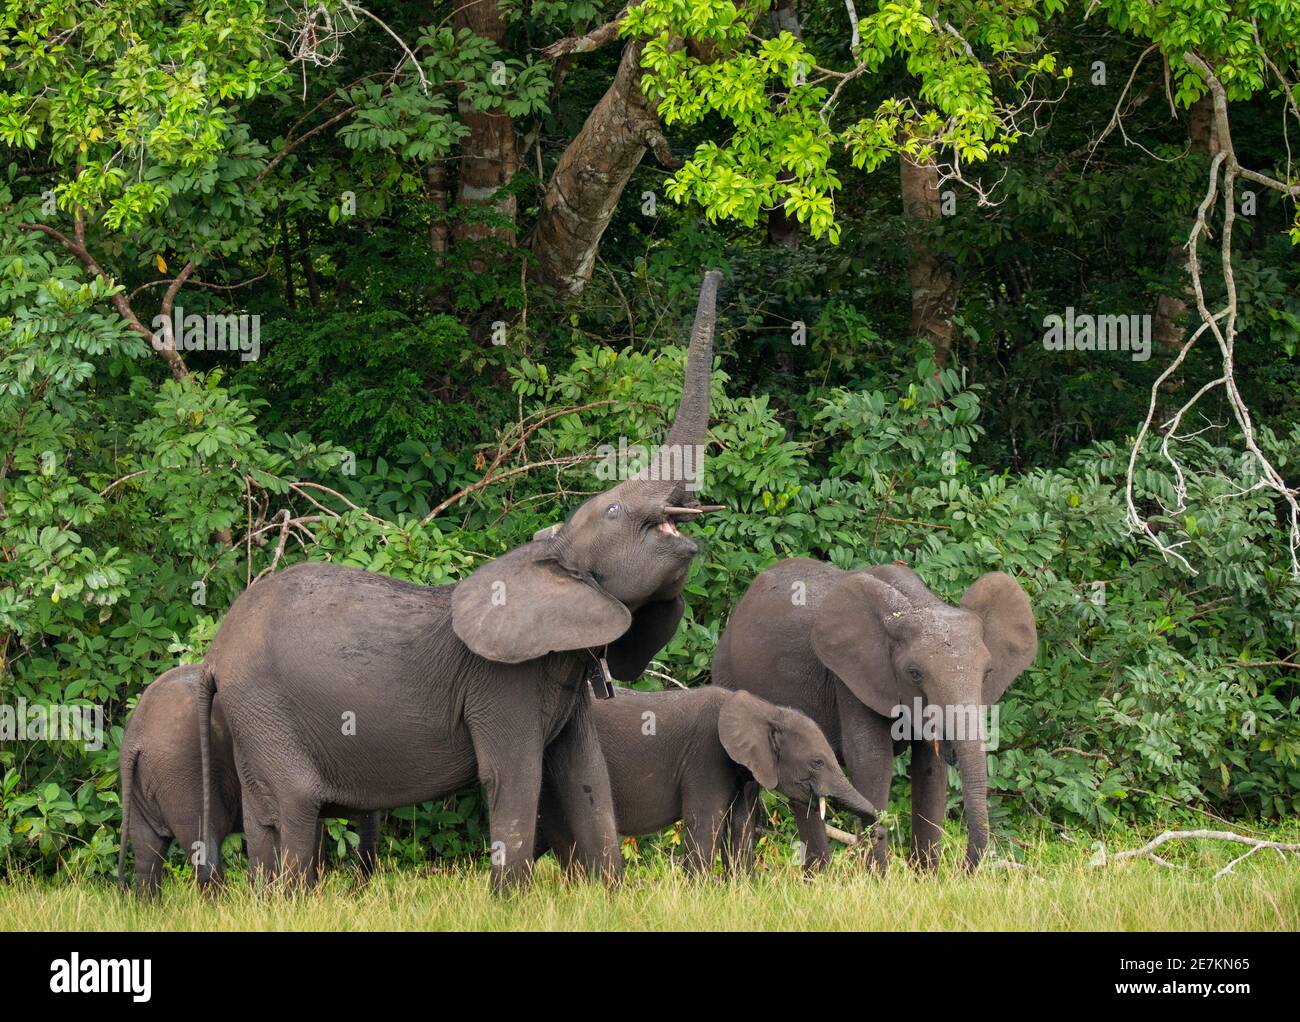 Éléphant forestier africain (Loxodonta cyclotis), utilisant le tronc pour atteindre les feuilles sur l'arbre, Parc national de Loango, Gabon, Afrique centrale. Banque D'Images